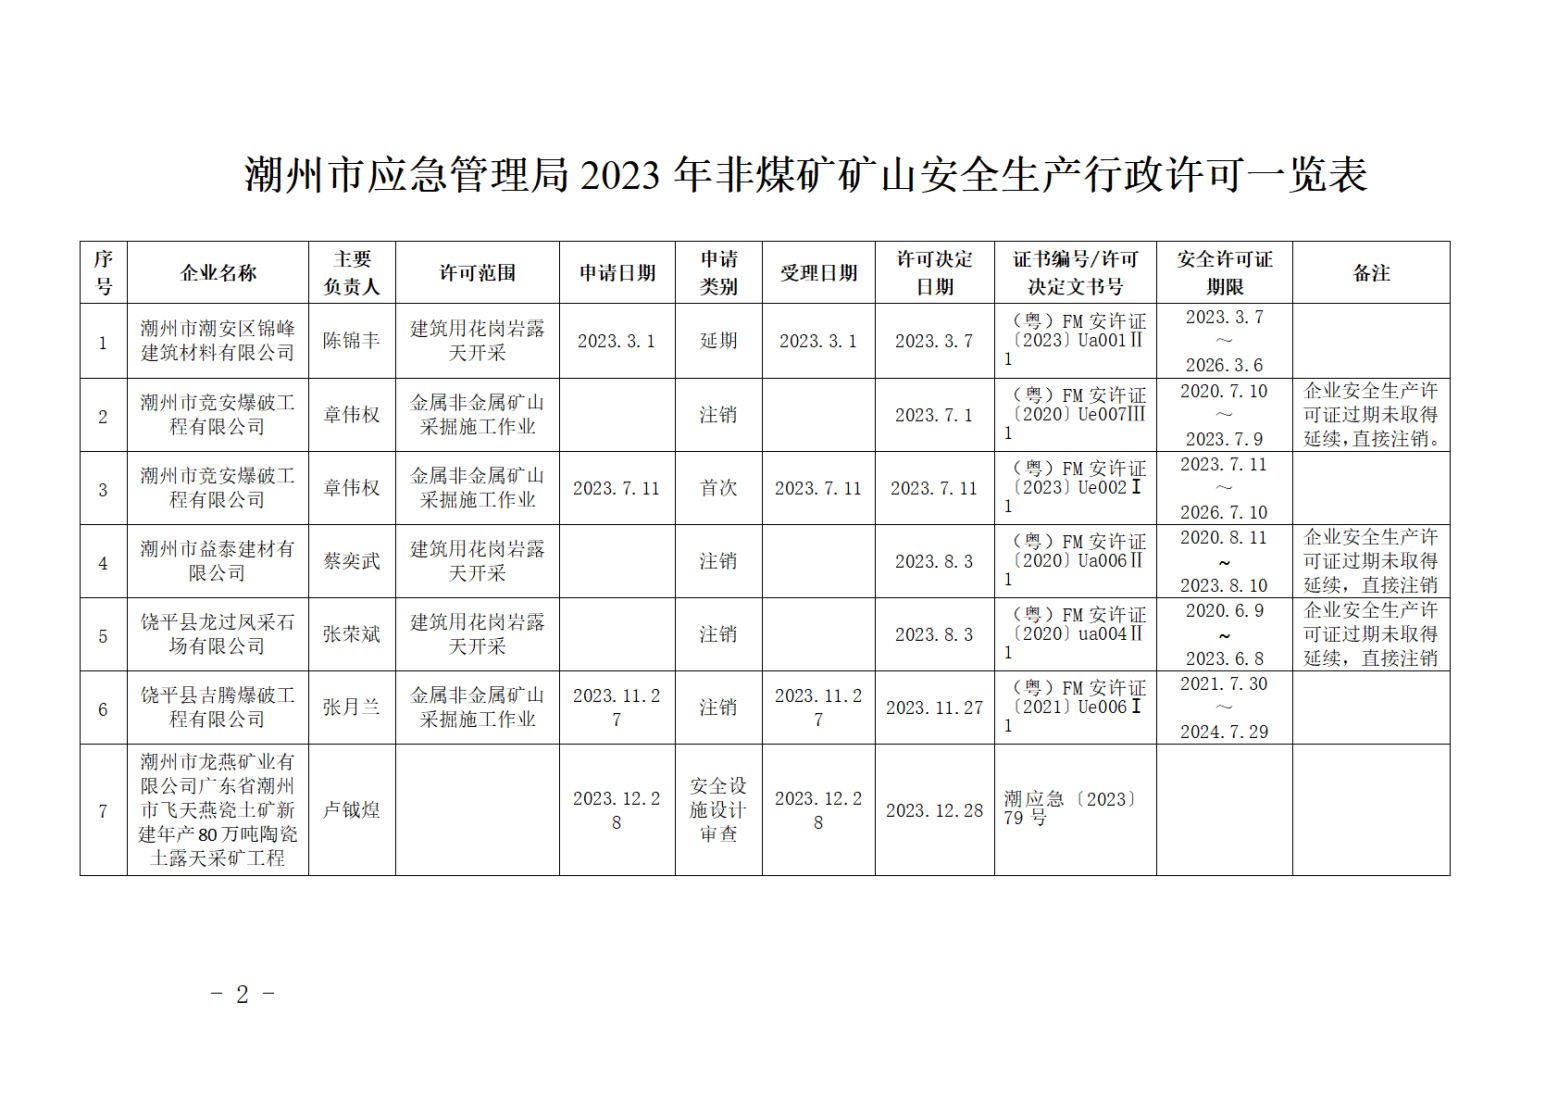 潮州市应急管理局关于2023年1-12月非煤矿矿山安全生产行政许可情况的公告_01.png